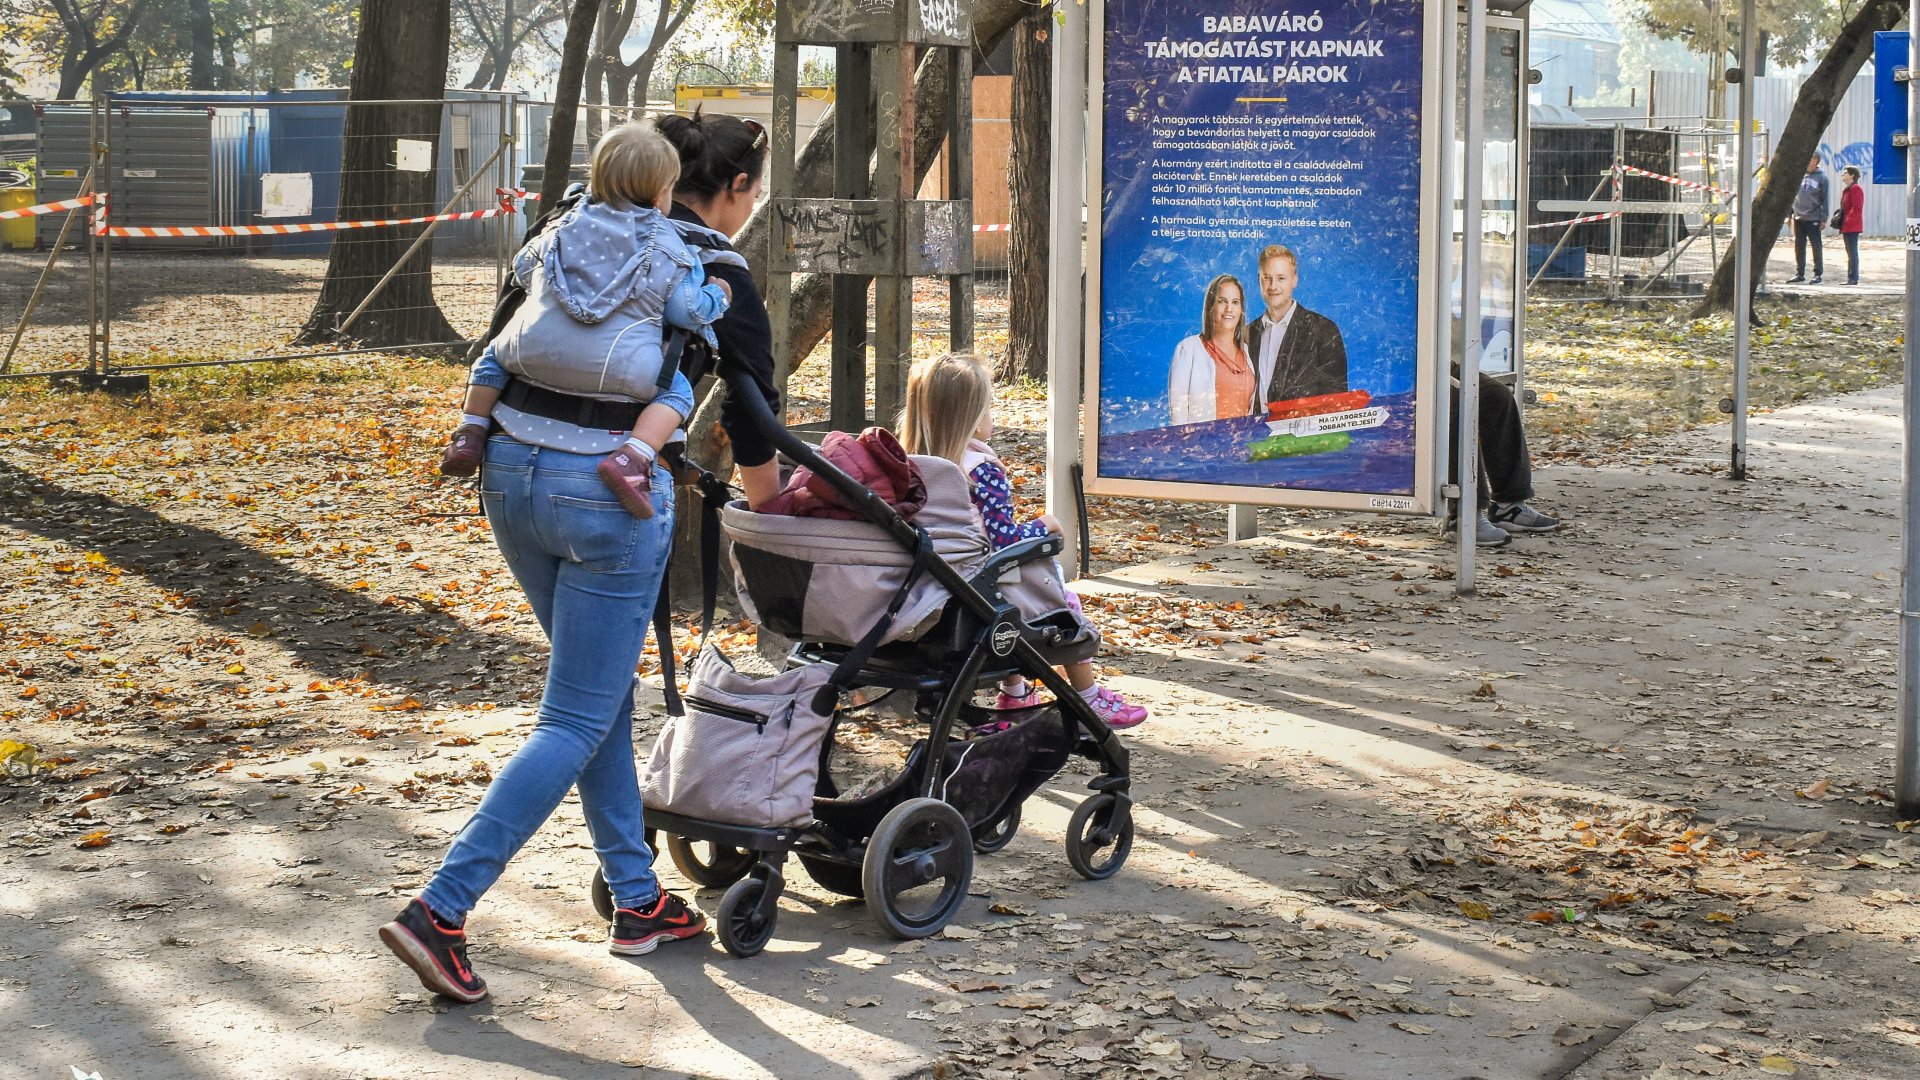 Egy fiatal anya germekeivel sétál egy babaváró támogatást hirdetõ plakát mellett a Városligetben